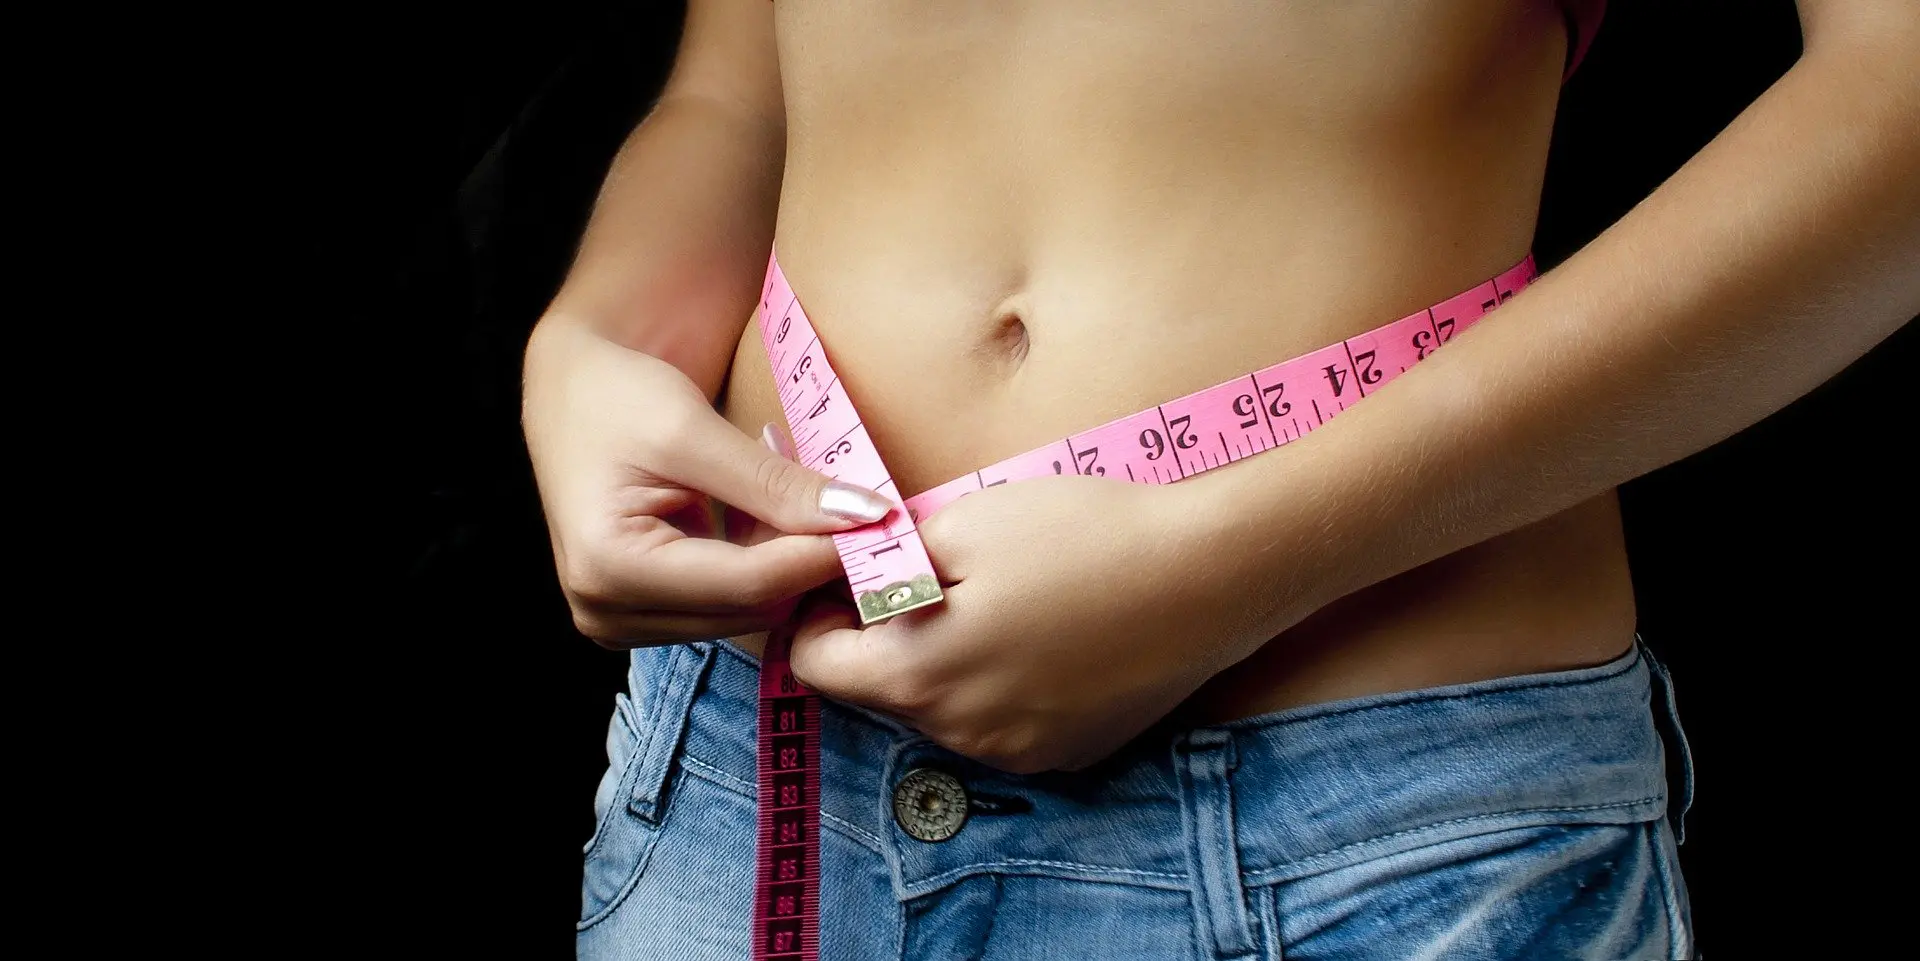 Woman measures her waistline